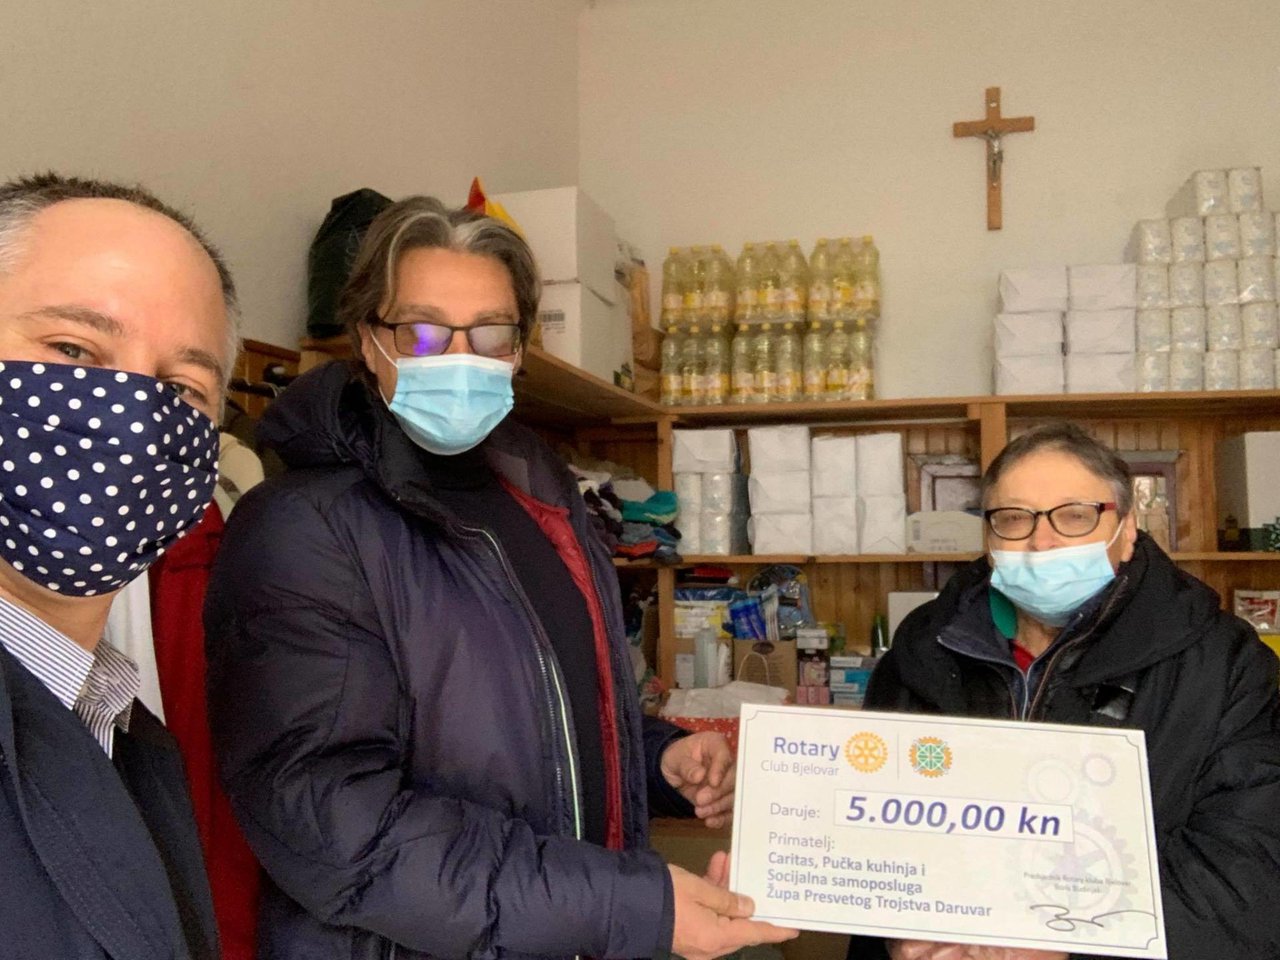 Fotografija: Predsjednik bjelovarskog Rotary kluba, Boris Budinjaš i Igor Valentić predali su u četvrtak donaciju od 5000 kuna daruvarskom Caritasu/Foto: privatni album